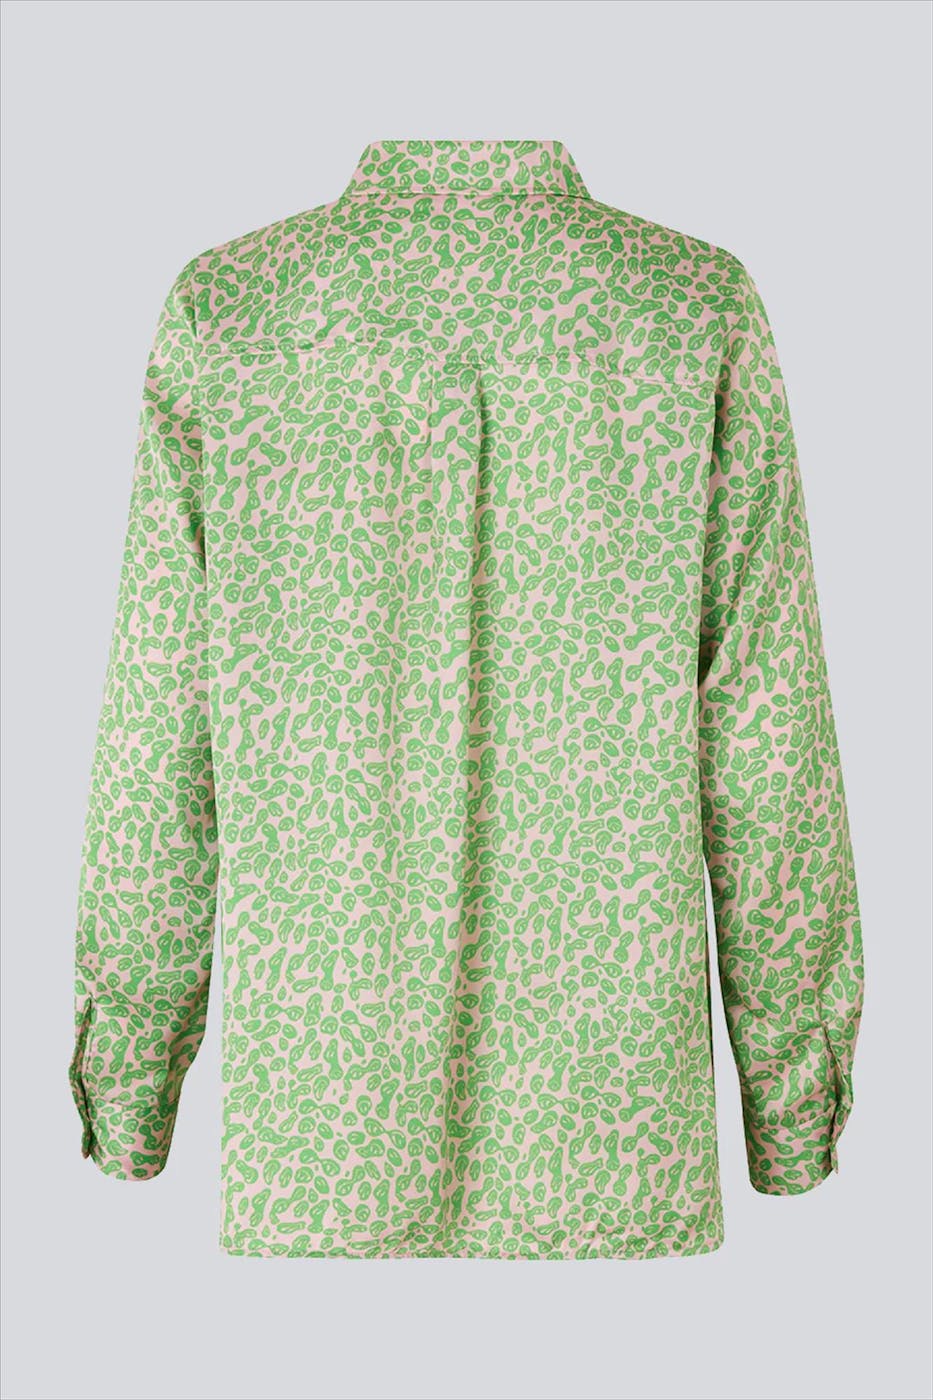 Modström - Roze-groene Clarke blouse